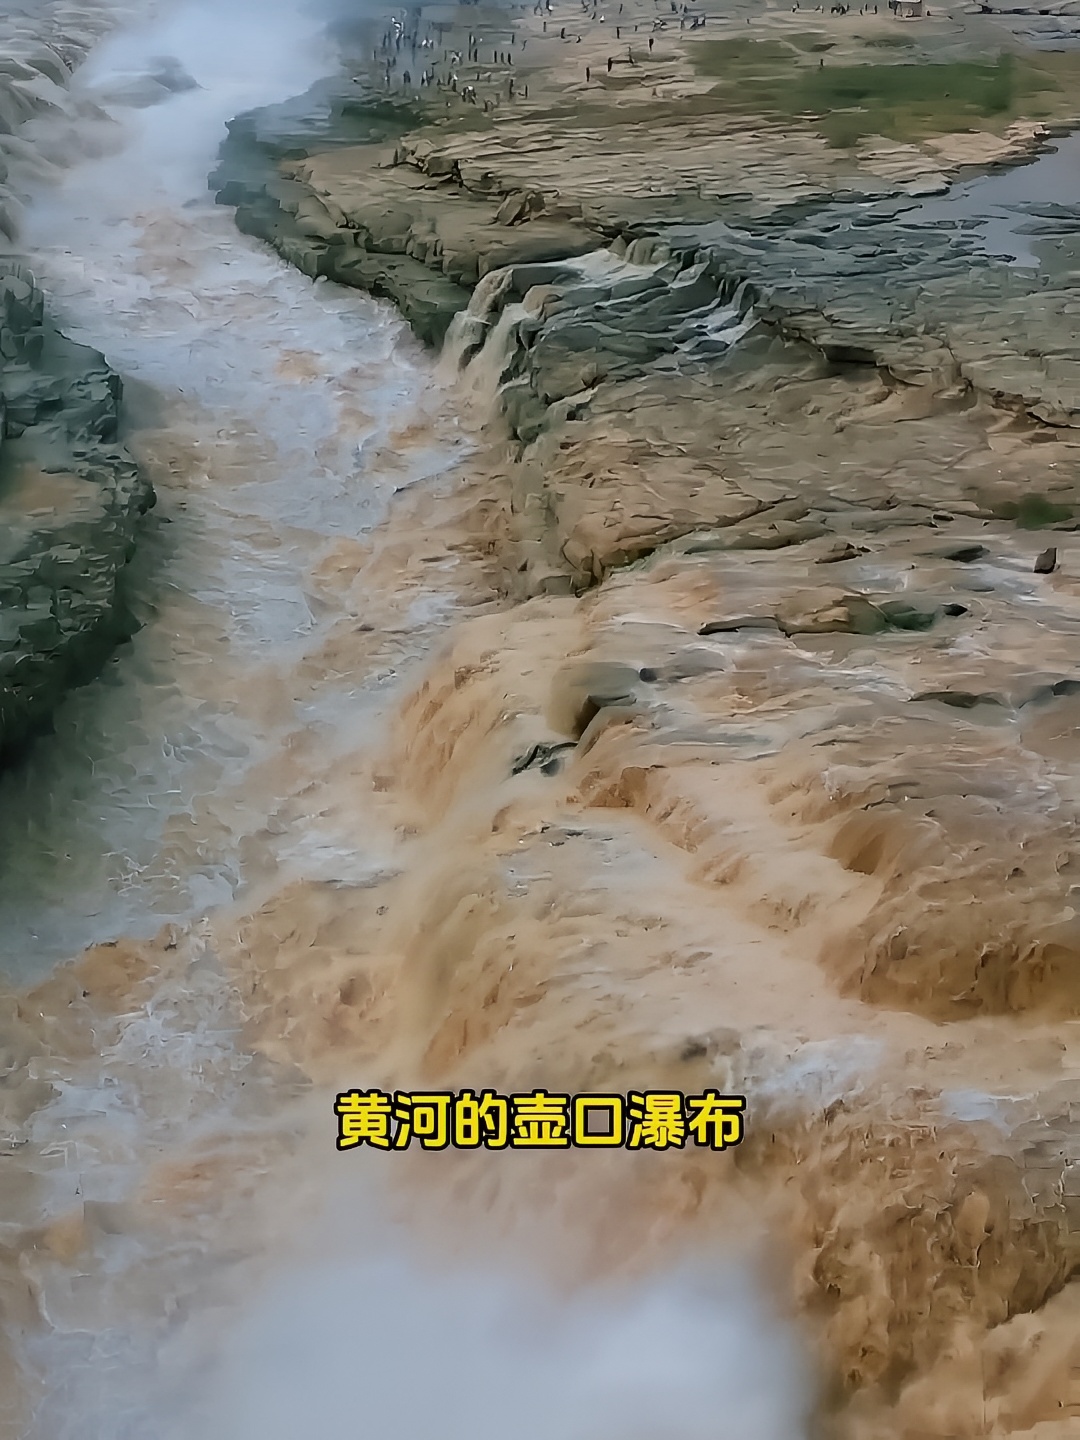 #世界上最大的黄色瀑布 #壶口瀑布 #旅游攻略